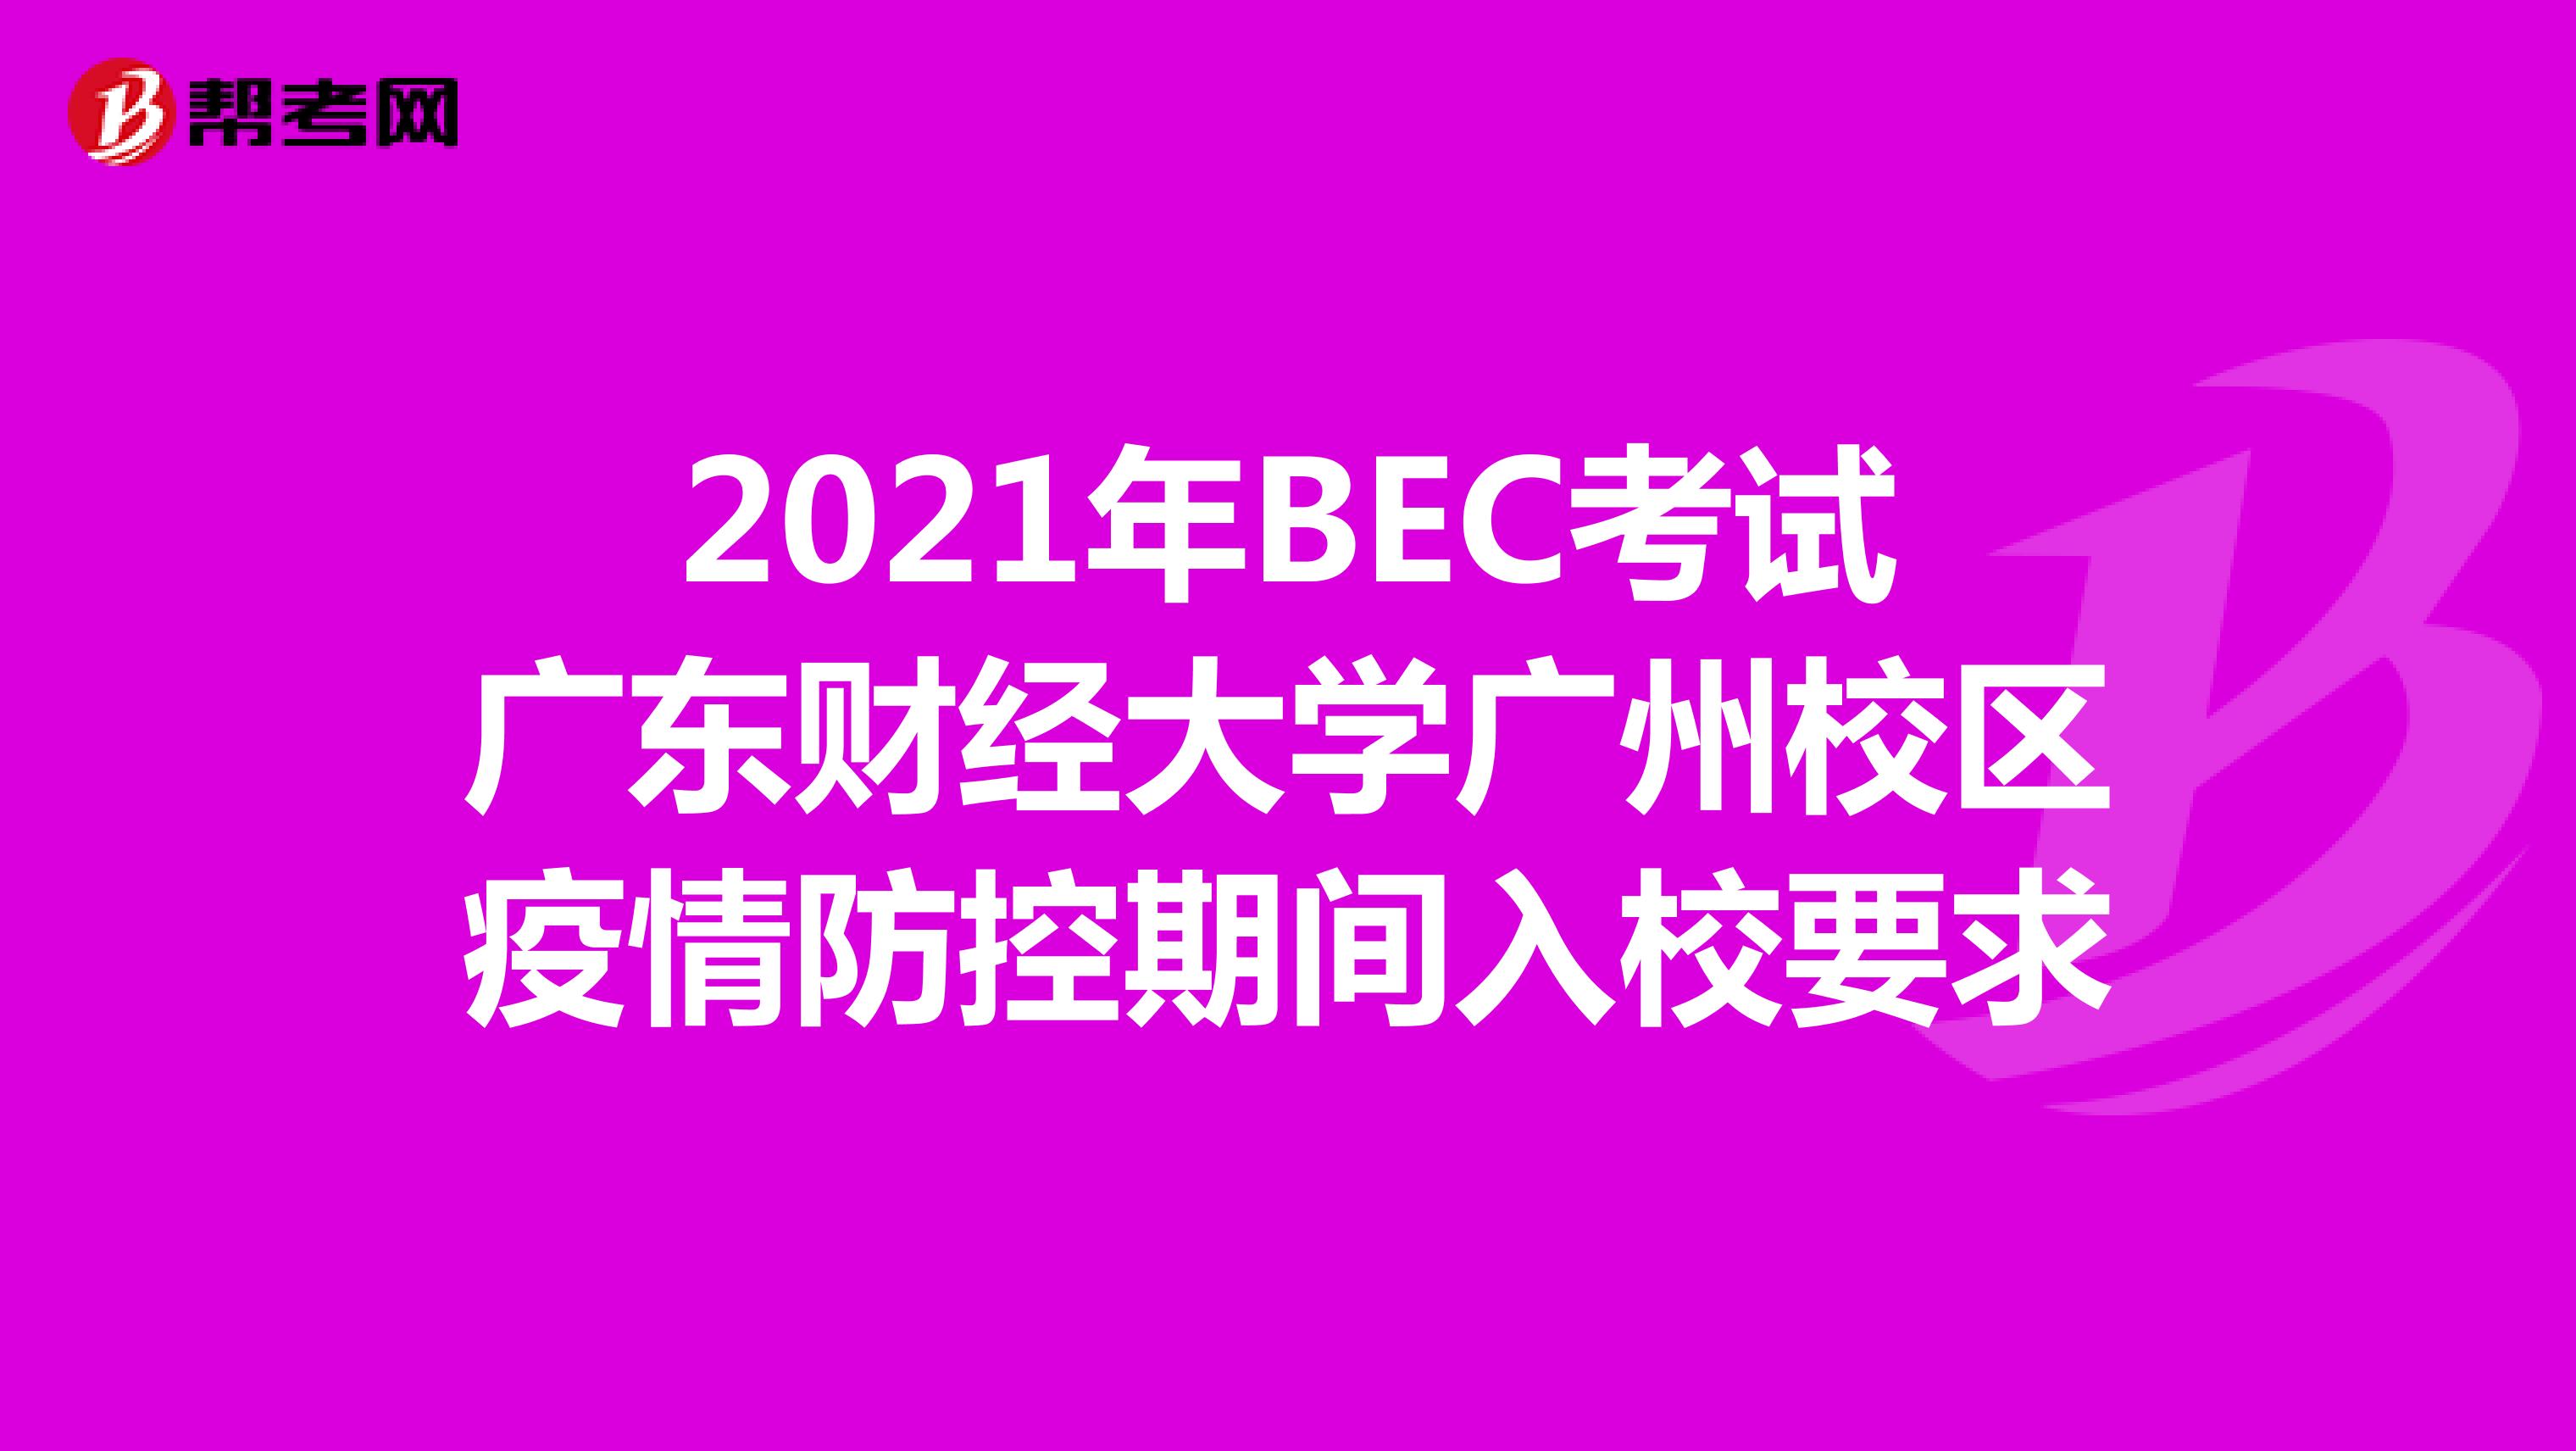 2021年BEC考试广东财经大学广州校区疫情防控期间入校要求